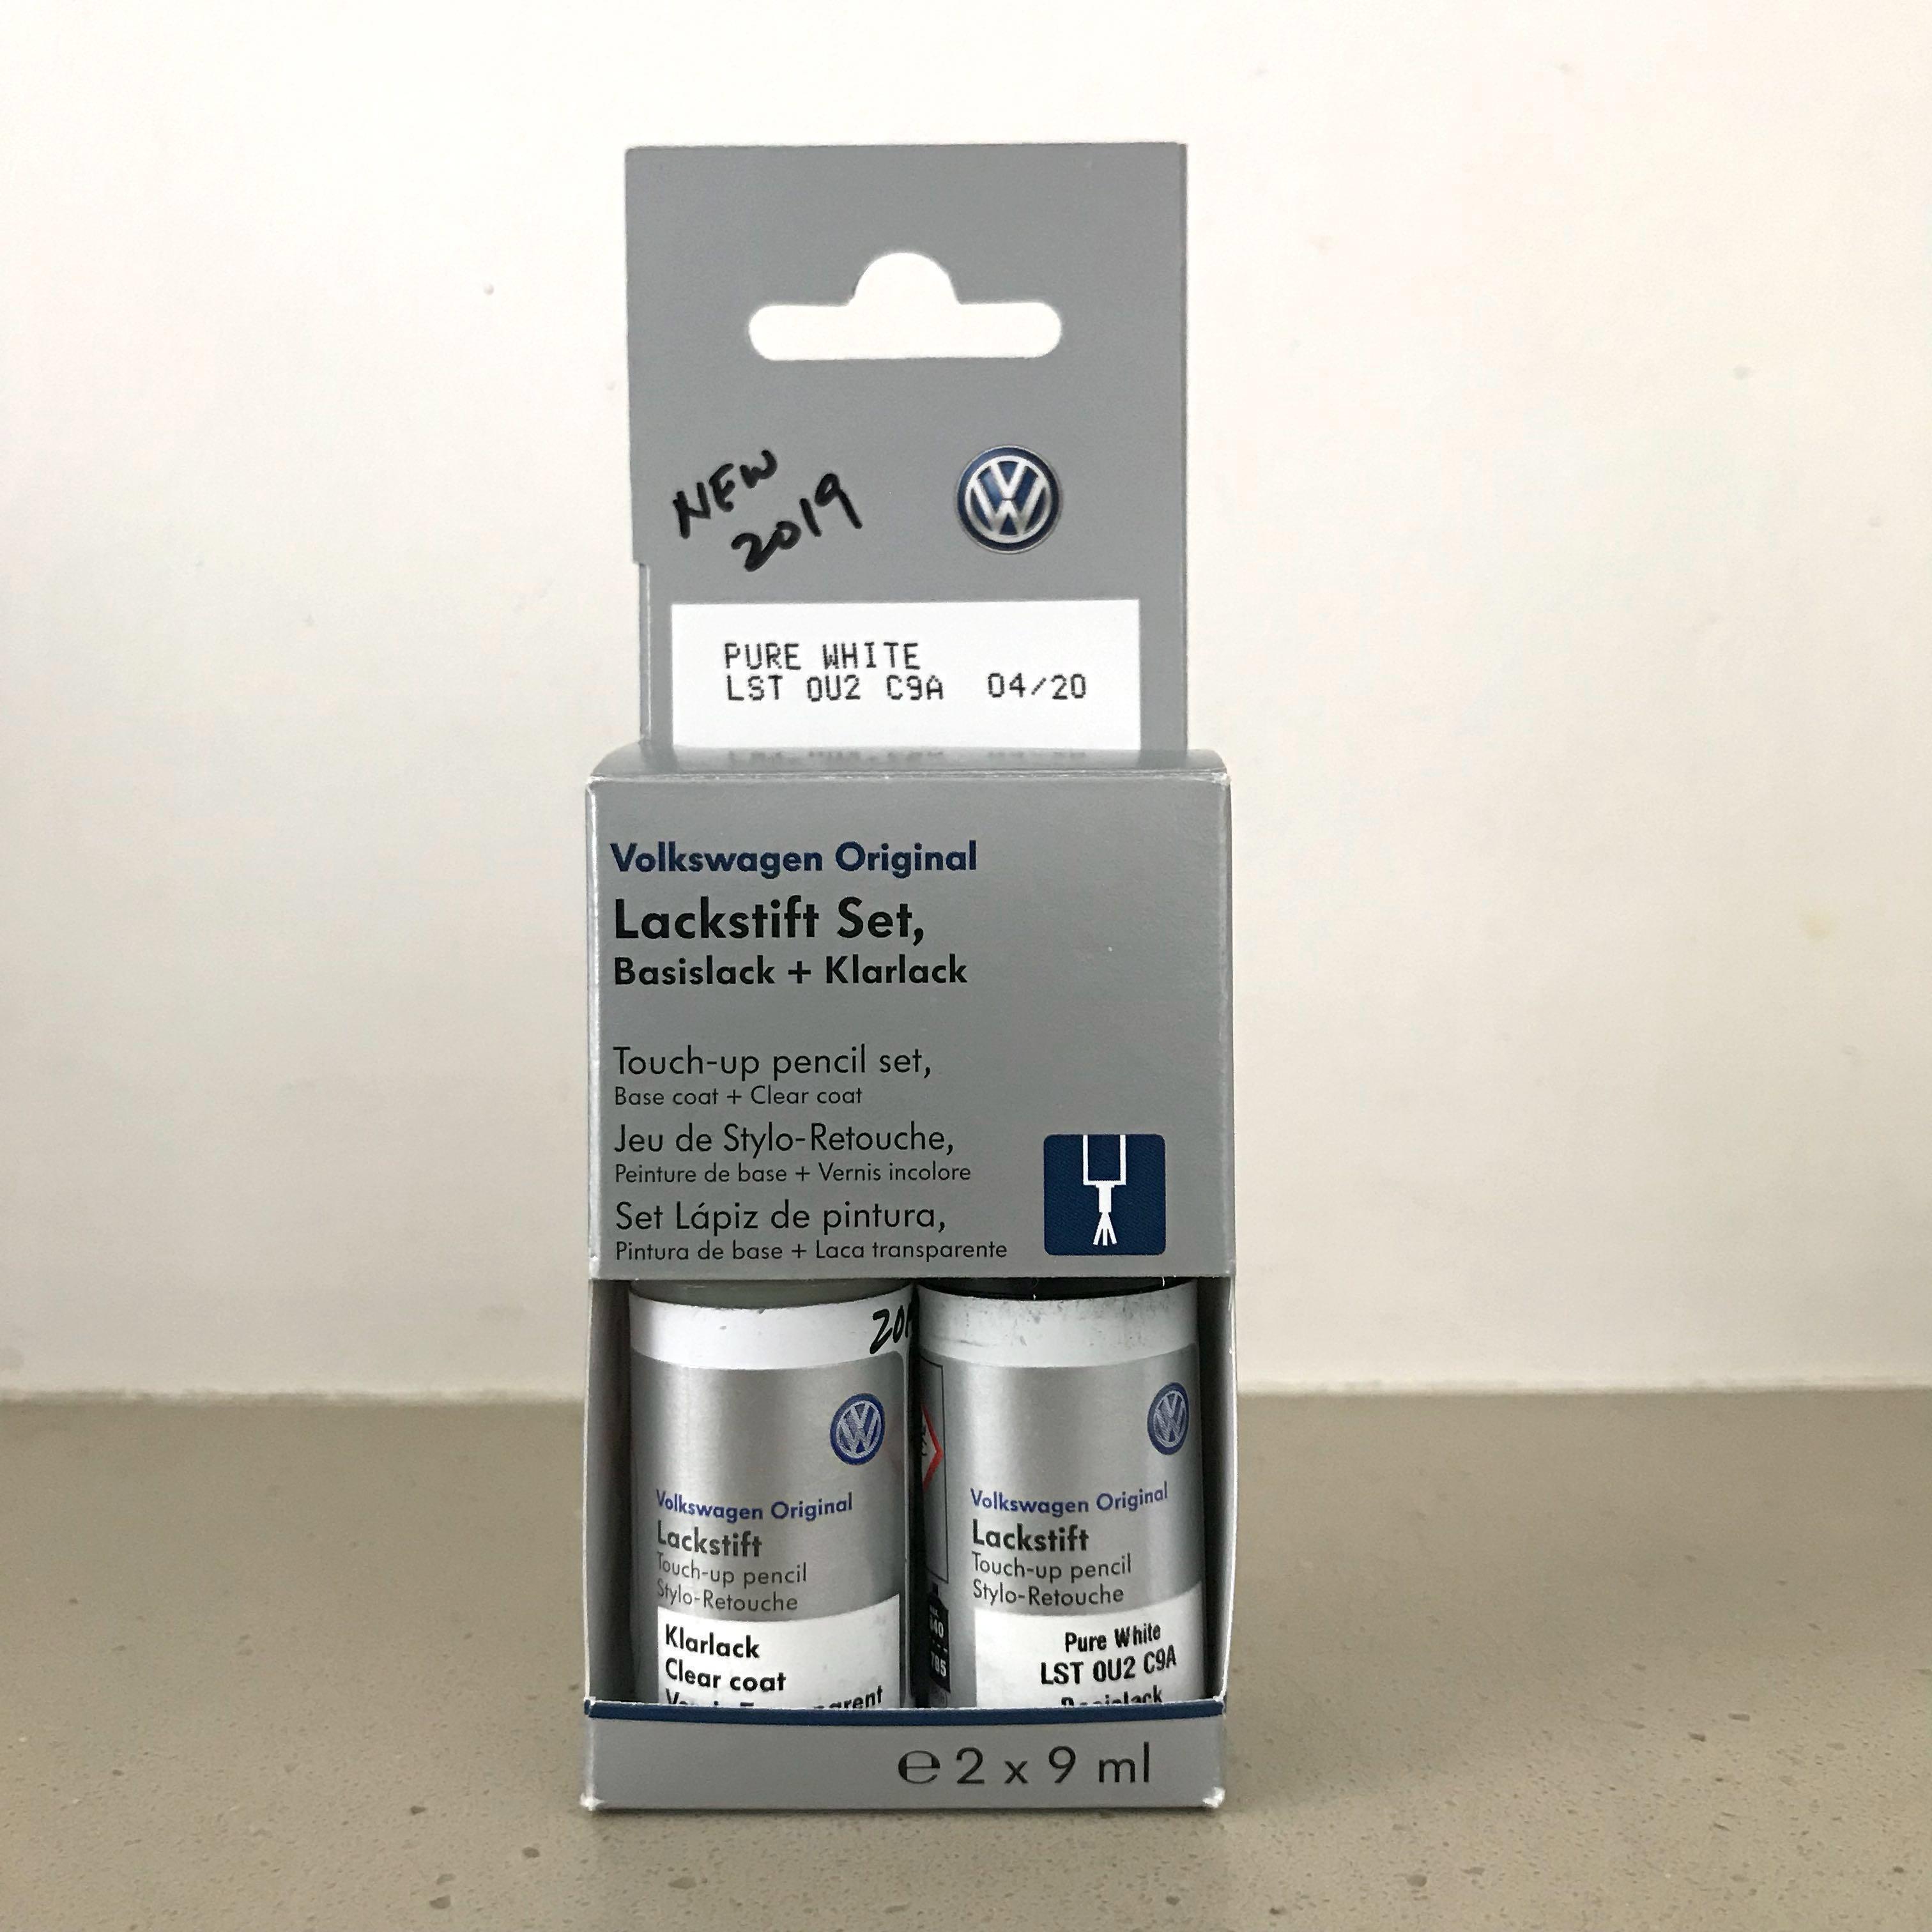 VW Volkswagen Golf paint touch-up pencil set Lackstift set, Car